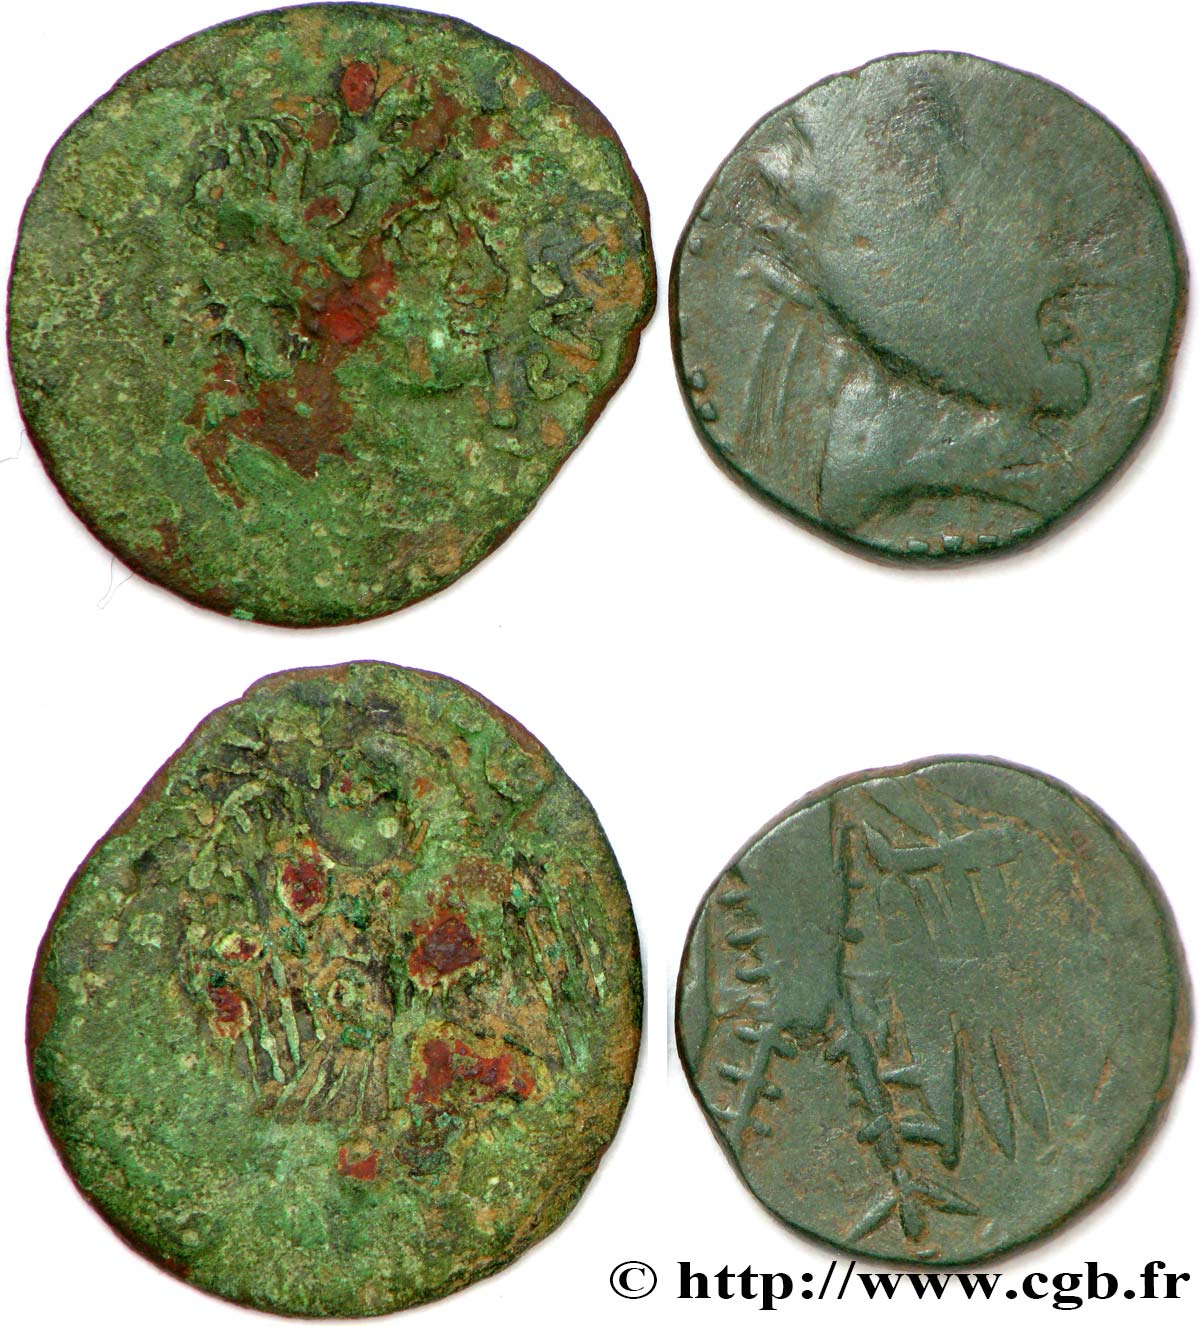 ZENTRUM - Unbekannt - (Region die) Lot d’un bronze à l aigle et son imitation (semis ou quadrans) lot